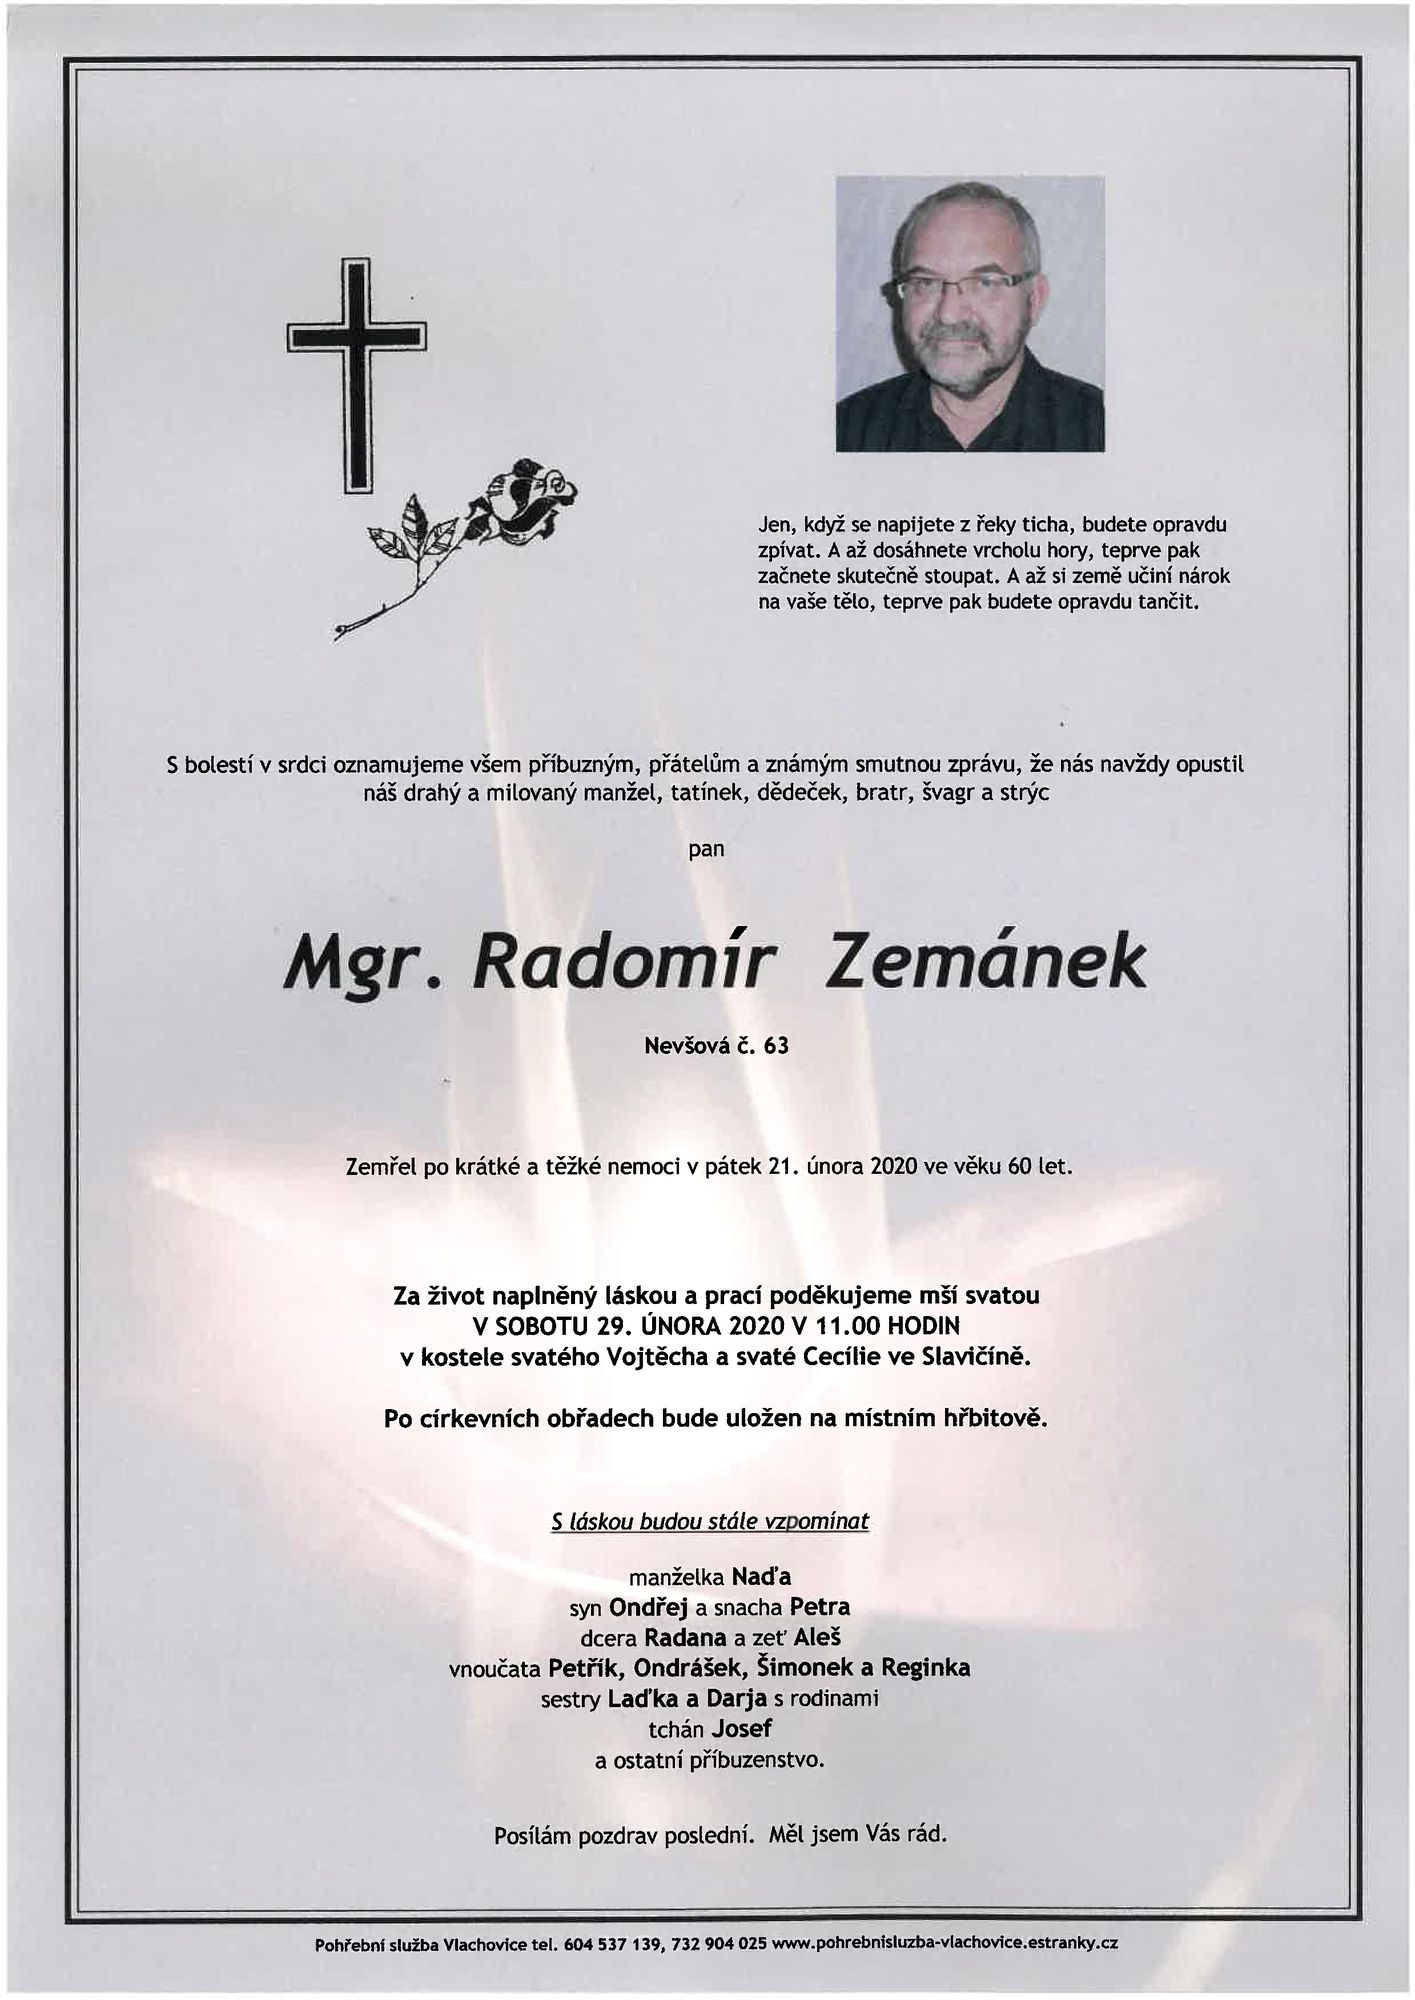 Mgr. Radomír Zemánek